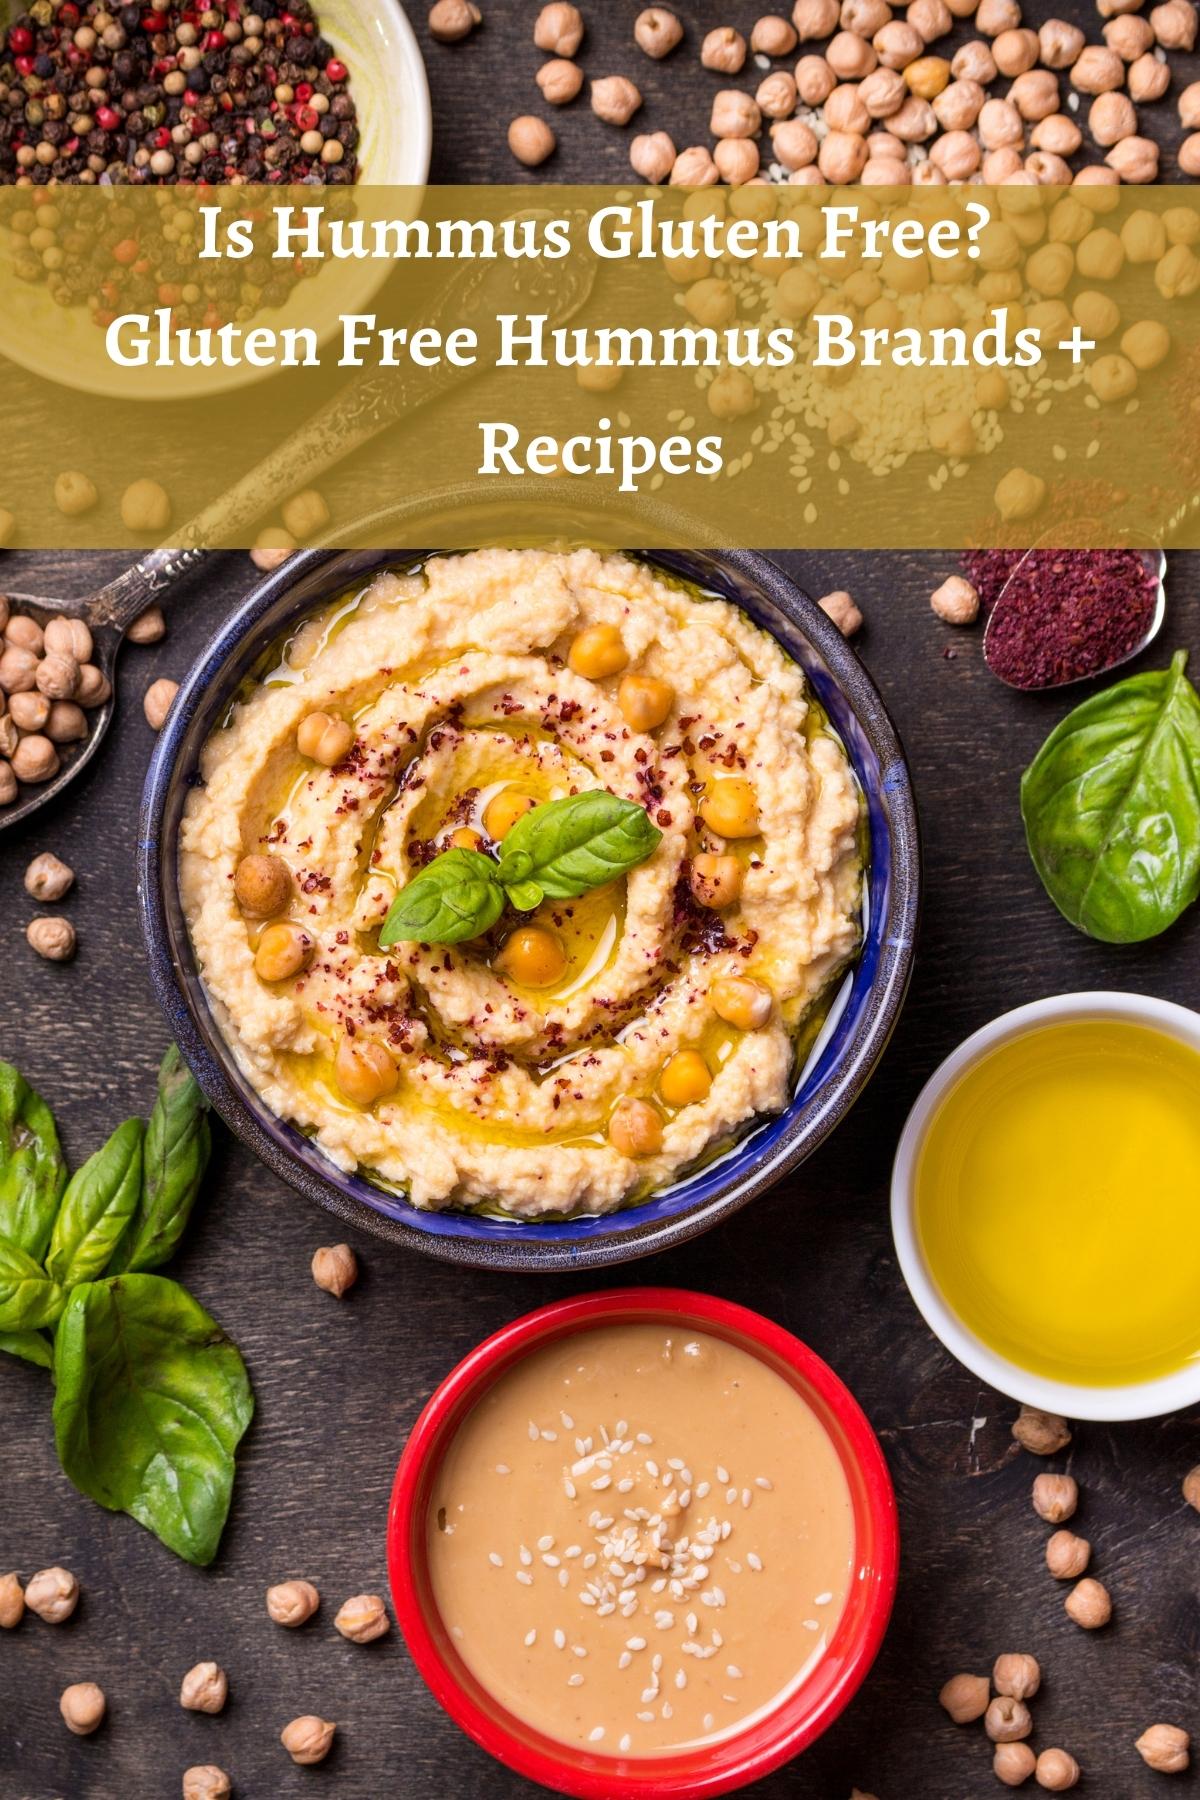 Gluten free hummus and hummus ingredients on a dark background